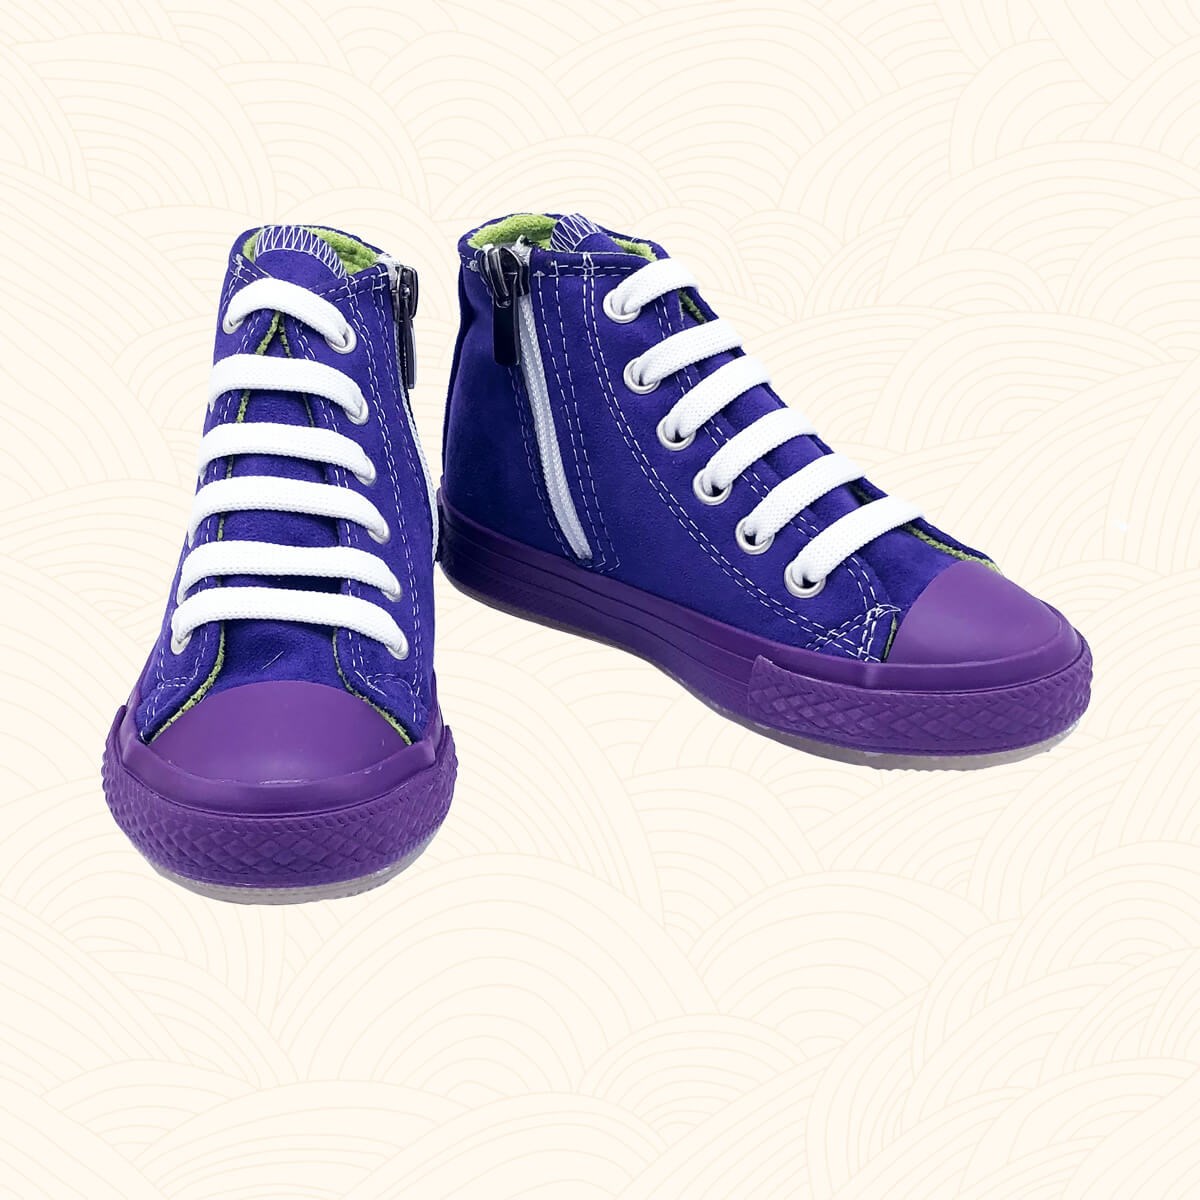 Kışlık Çocuk Spor Ayakkabı Killah - Mor Renk 2143 | Lilbugga